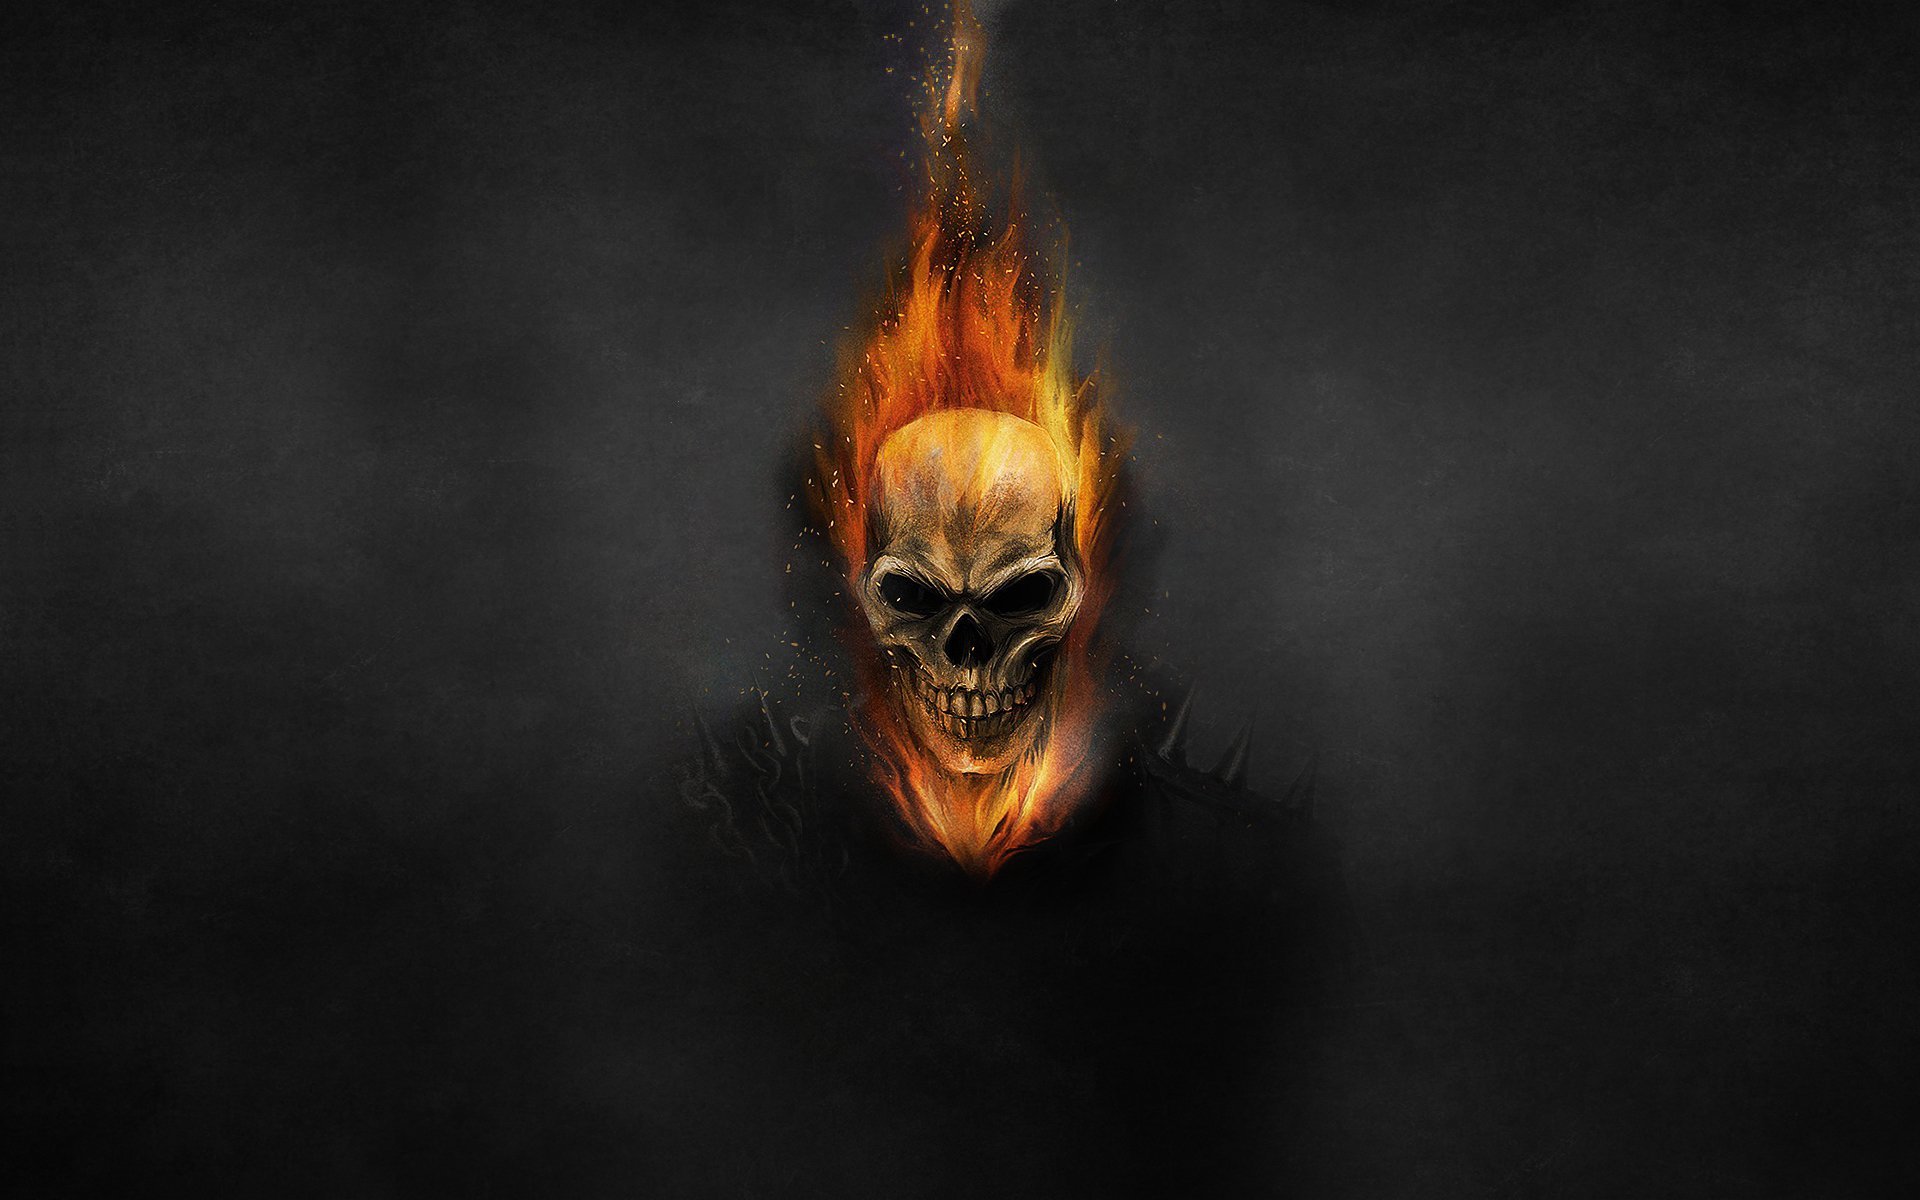 Gallery For Gt Ghost Rider Skull Wallpaper